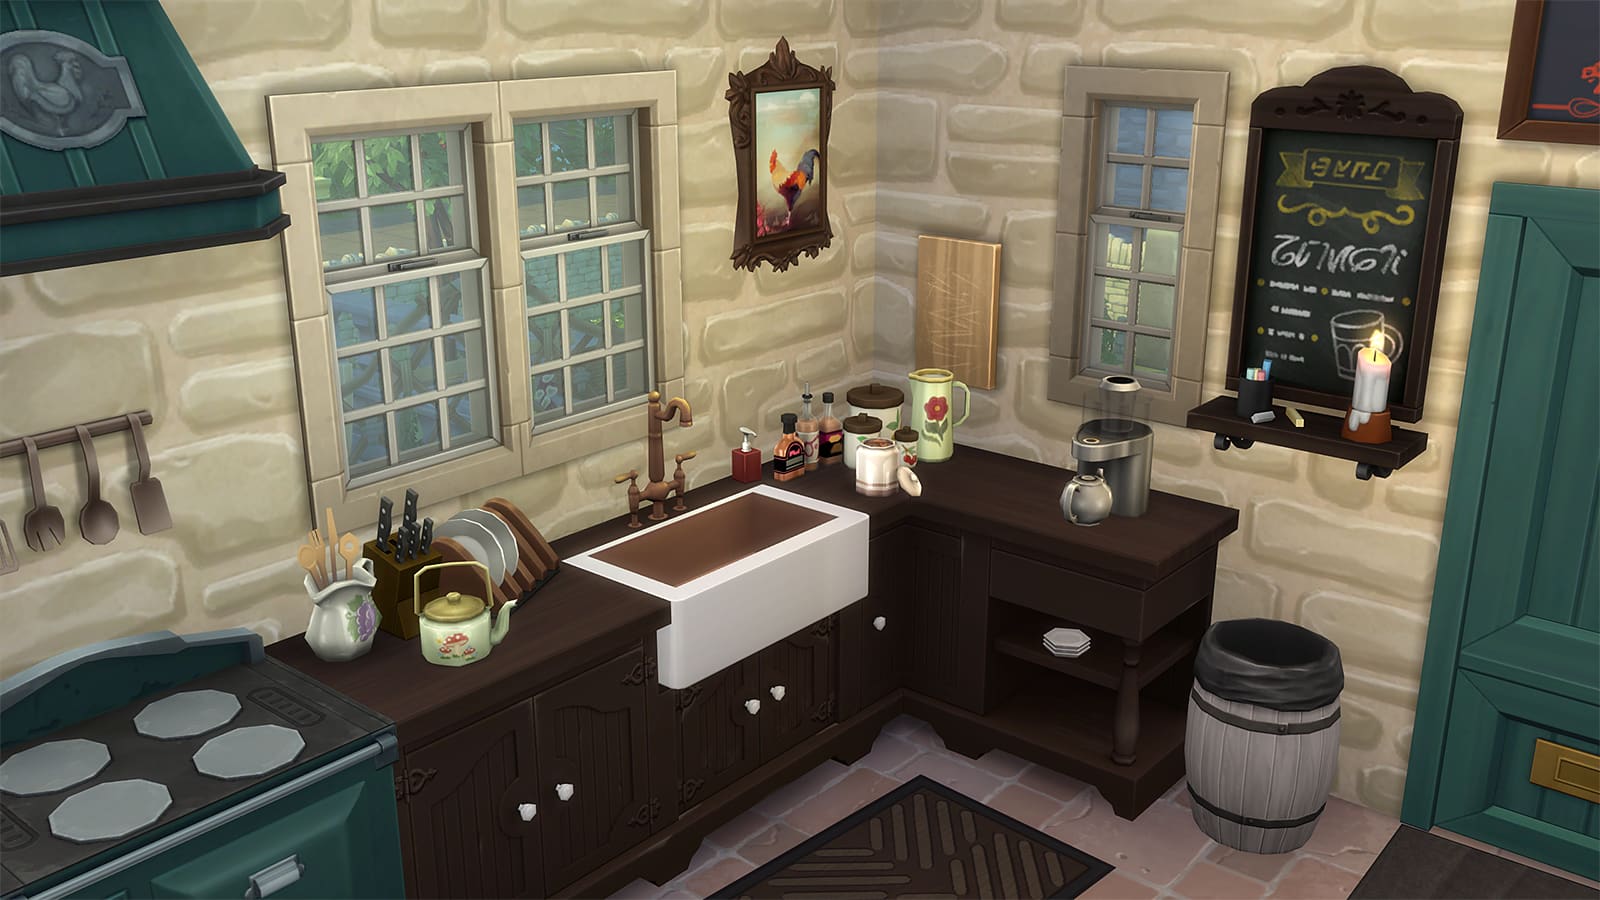 Eine Küche in den Sims 4 mit dem OMSP -Regal -Mod